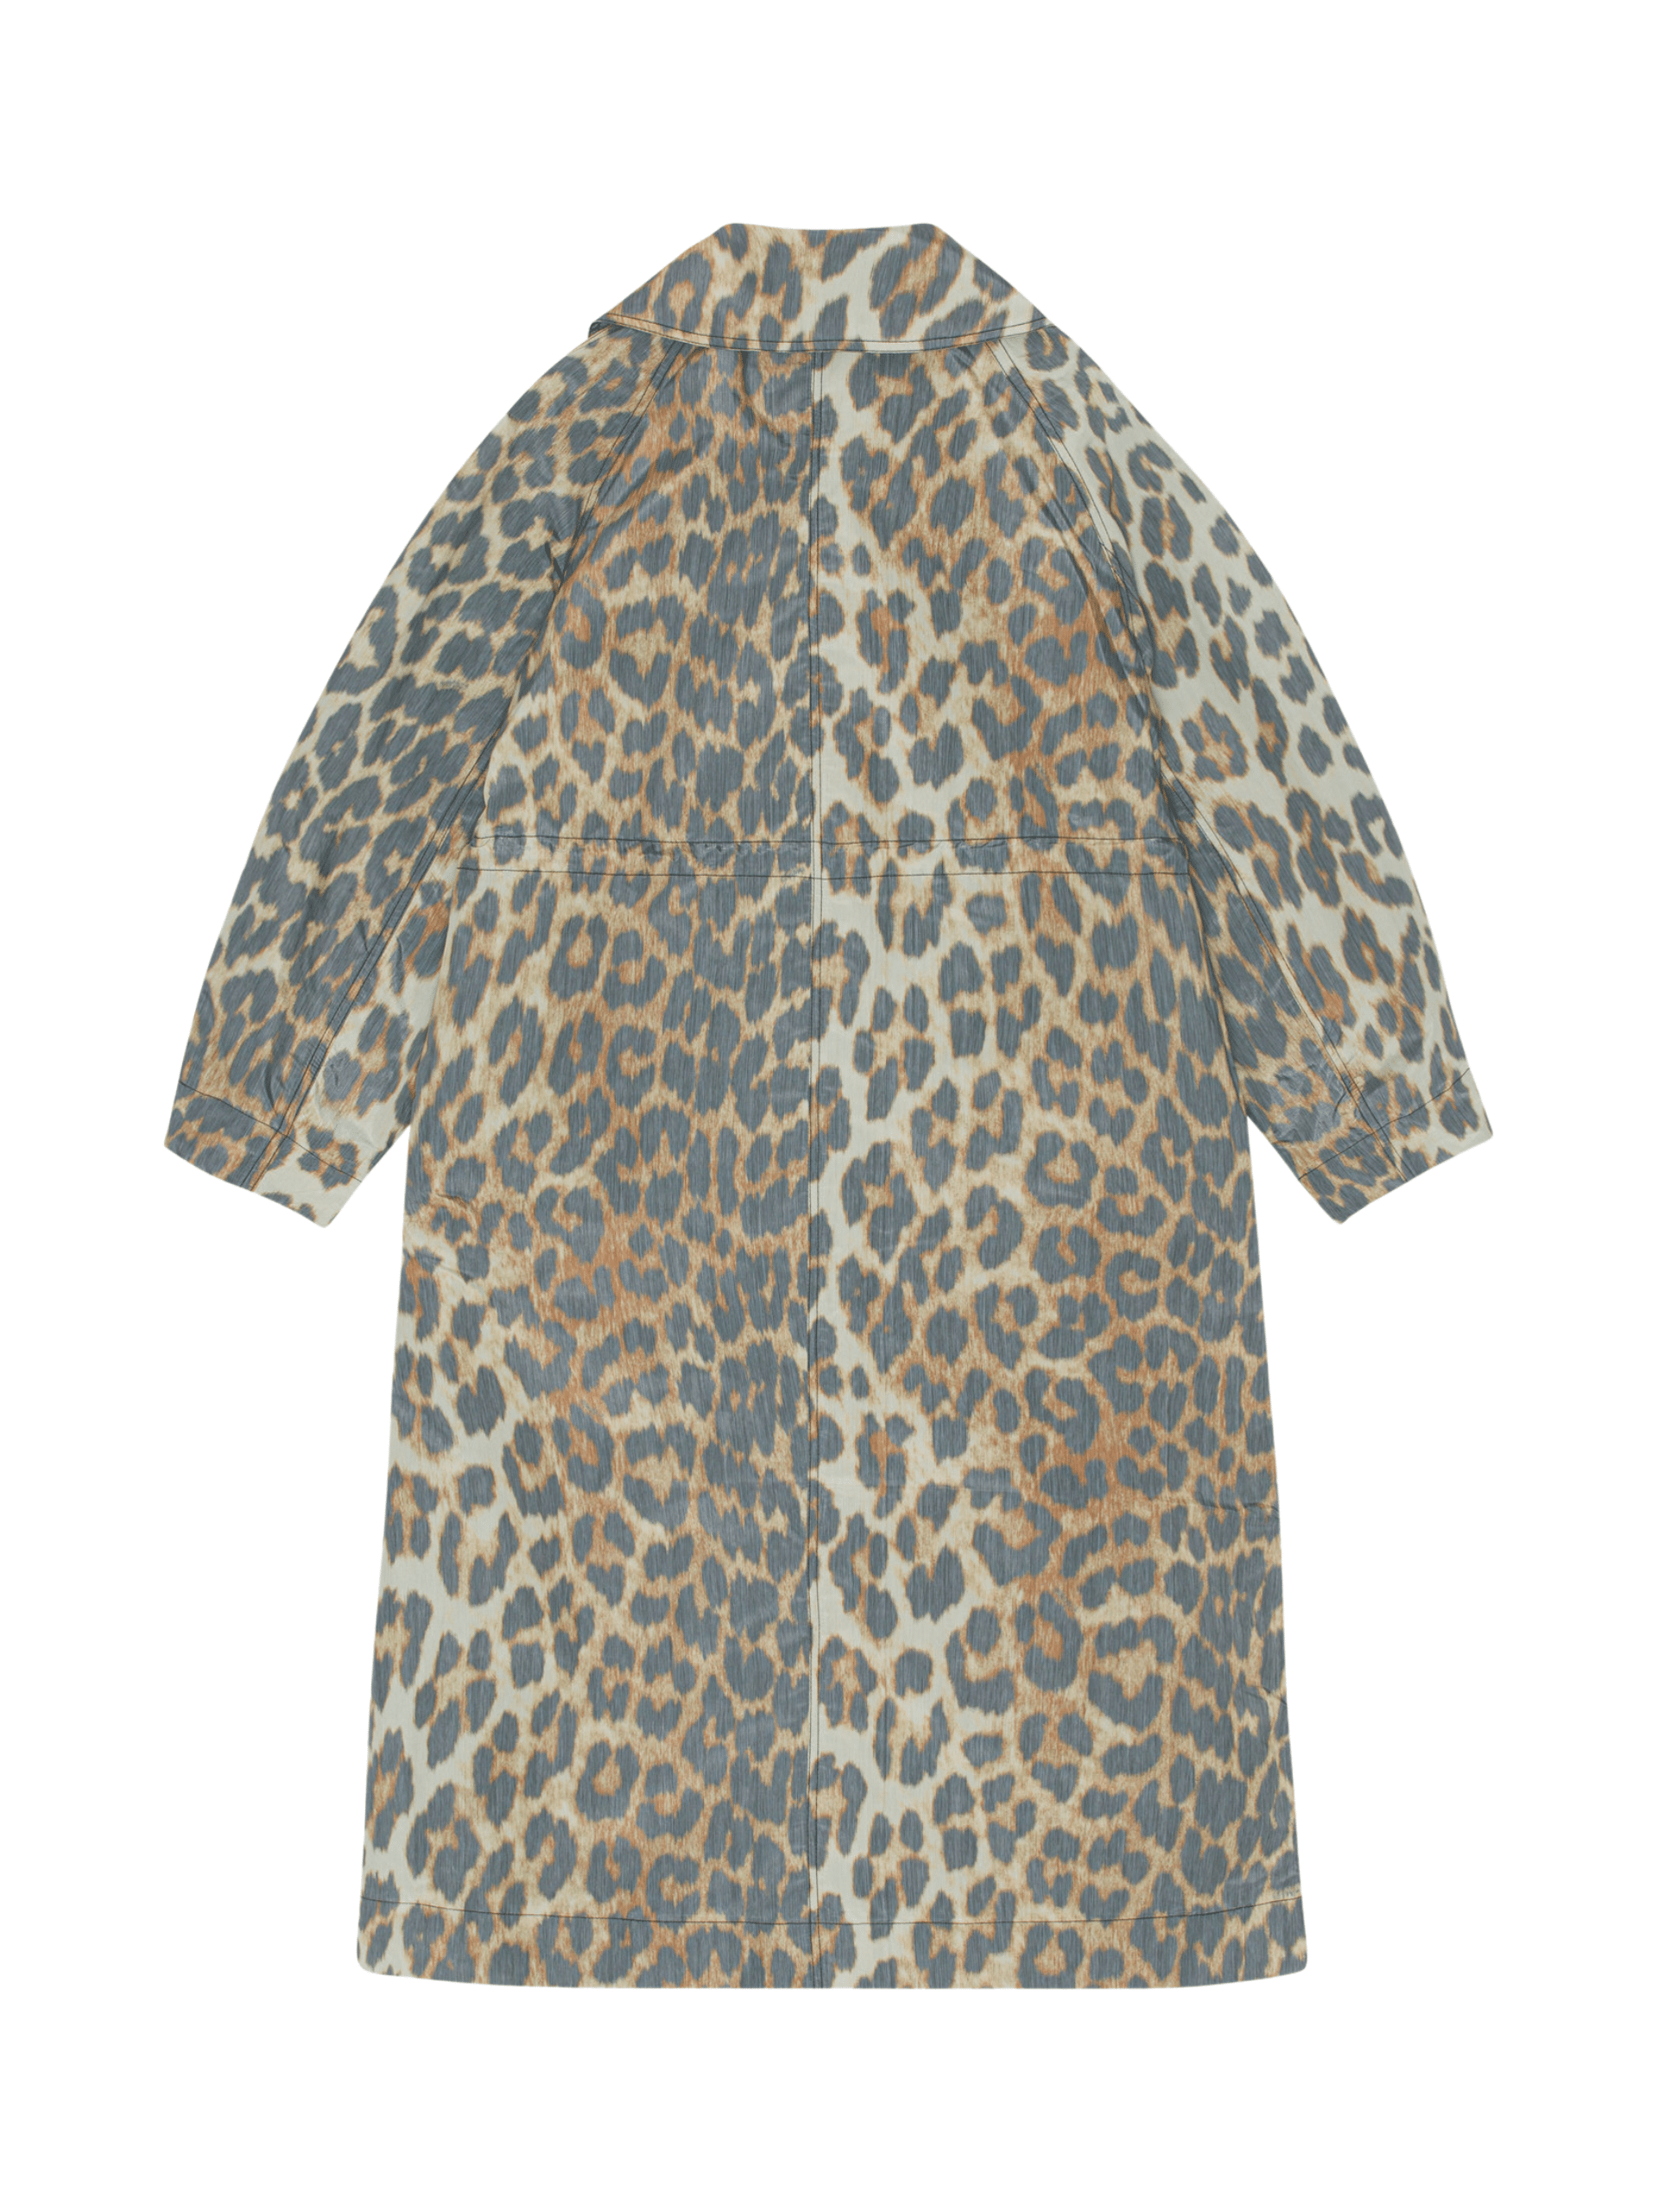 Crispy Shell Coat / Leopard Womens GANNI 